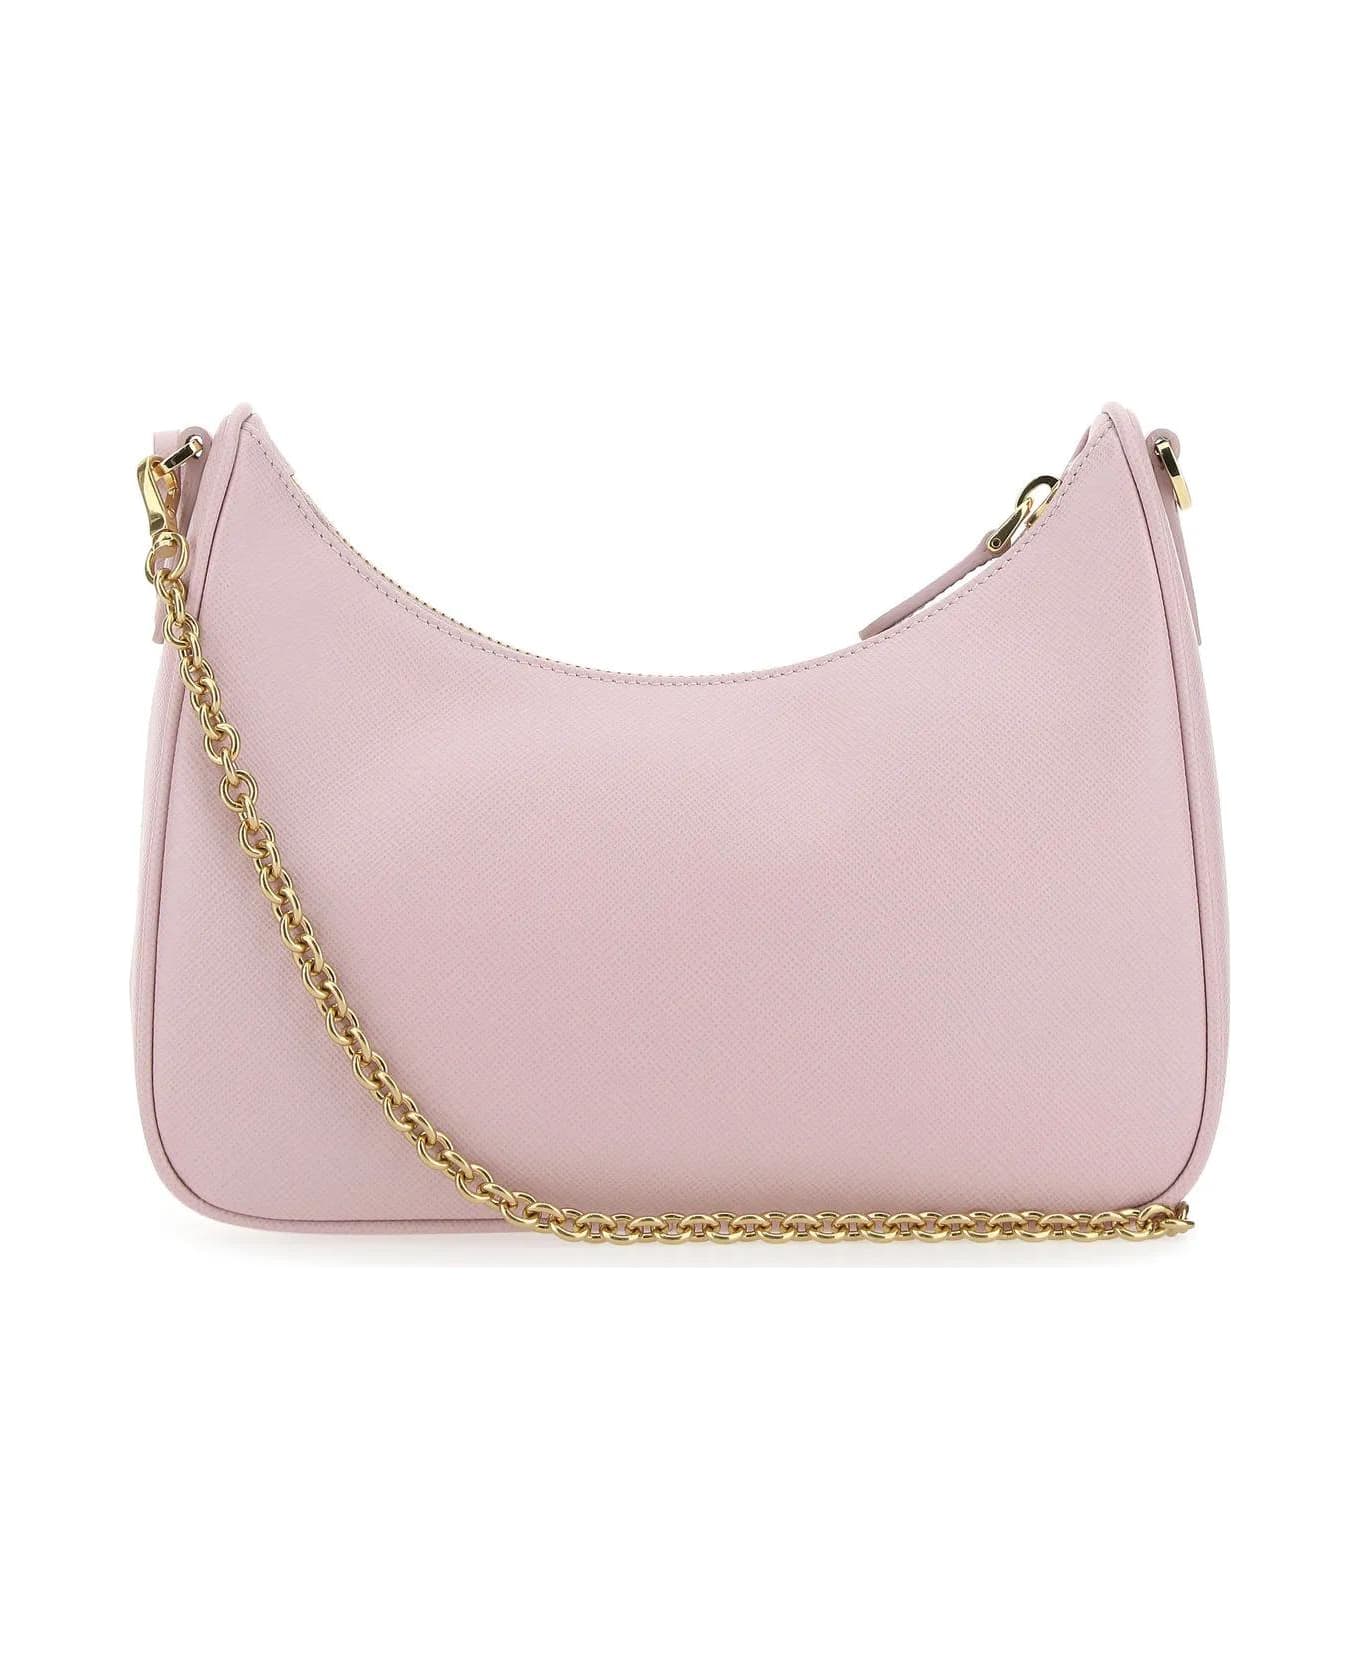 Prada Pastel Pink Leather Re-edition 2005 Handbag - Alabastro